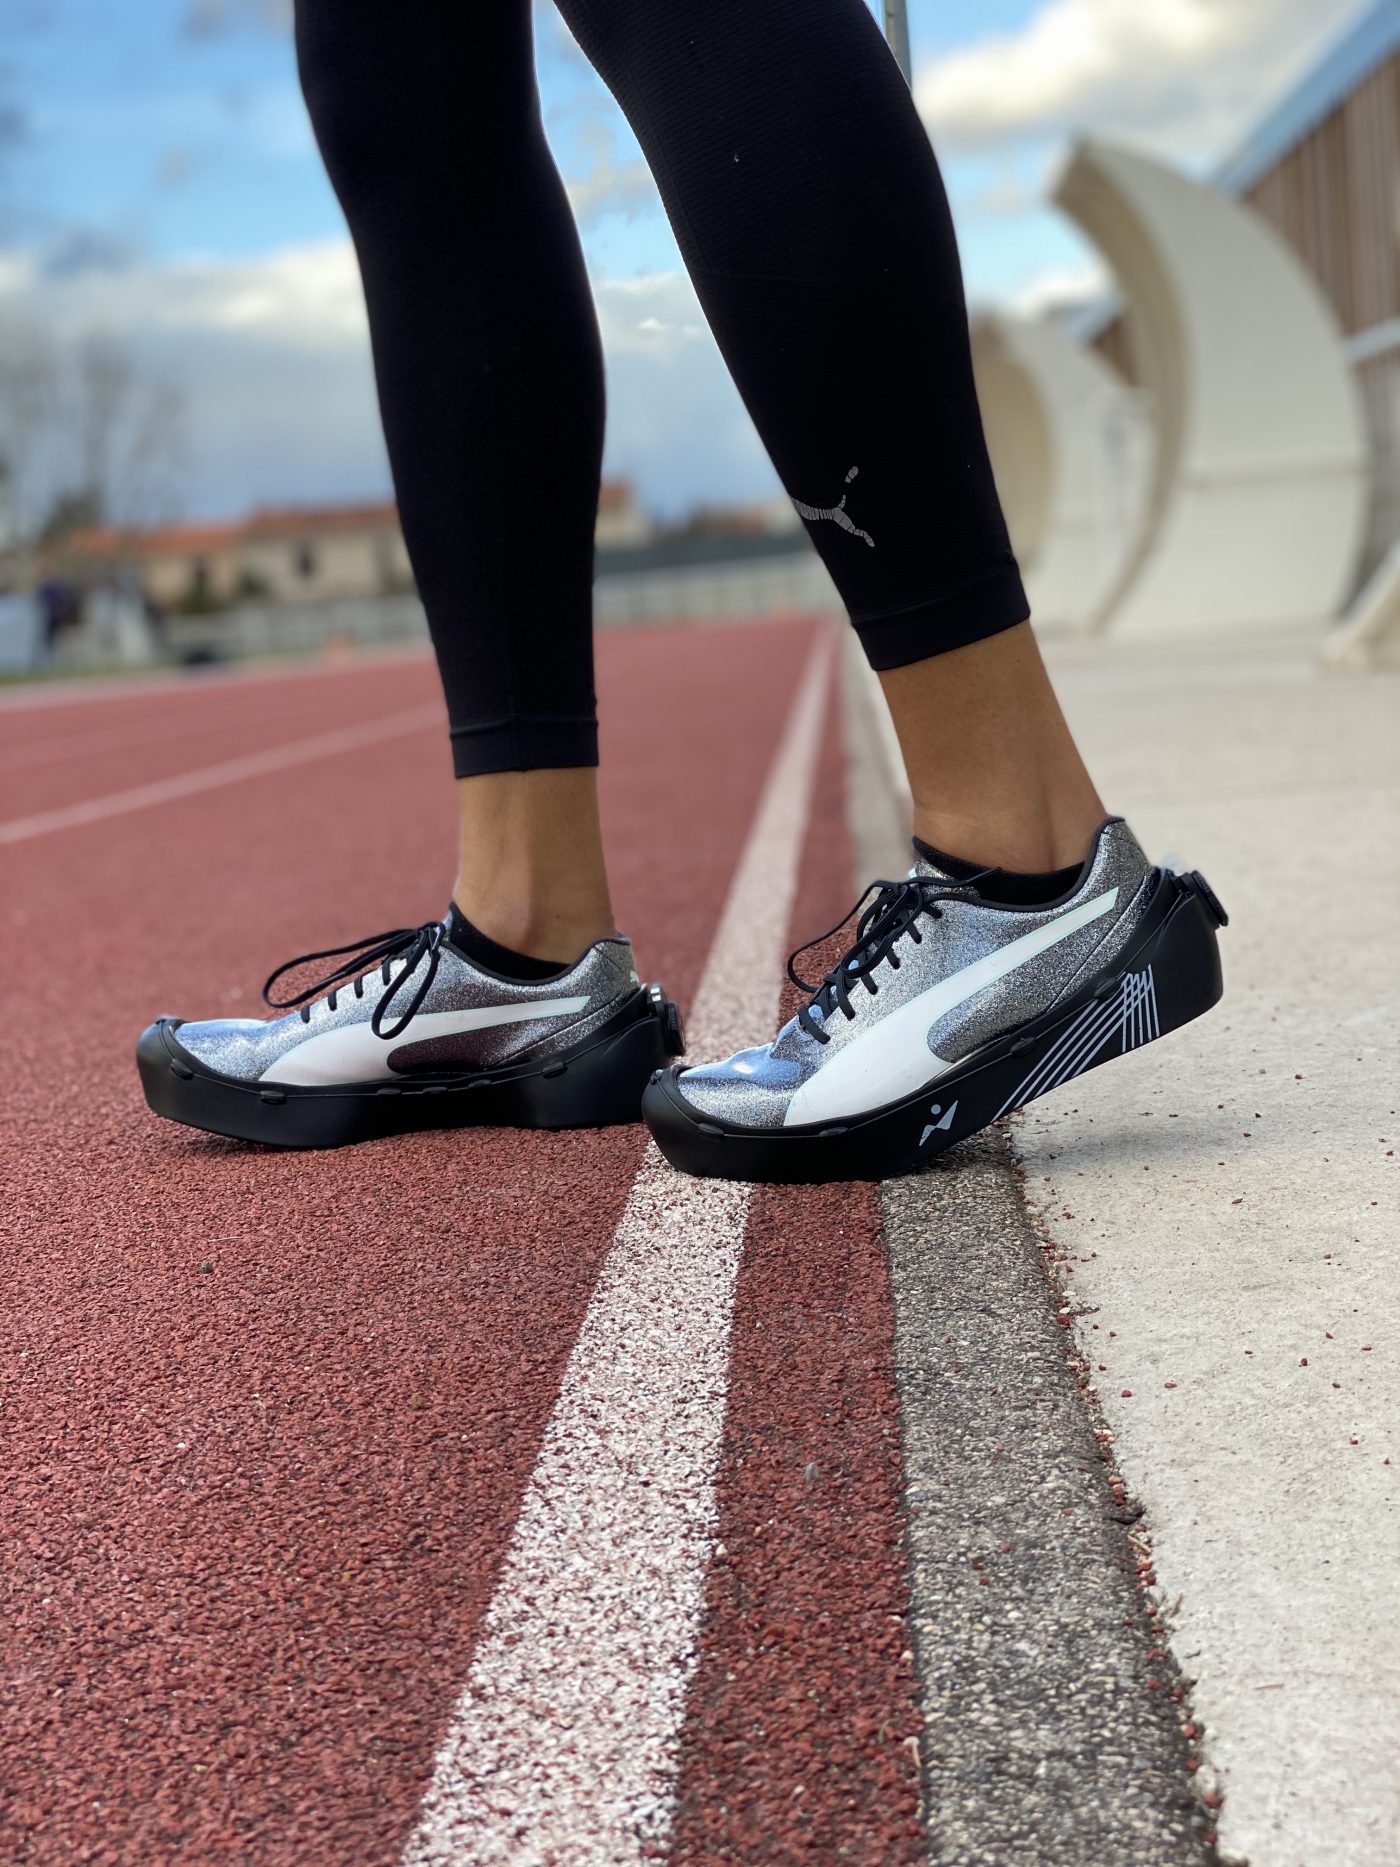 Chaussures à pointes pour l'athlétisme